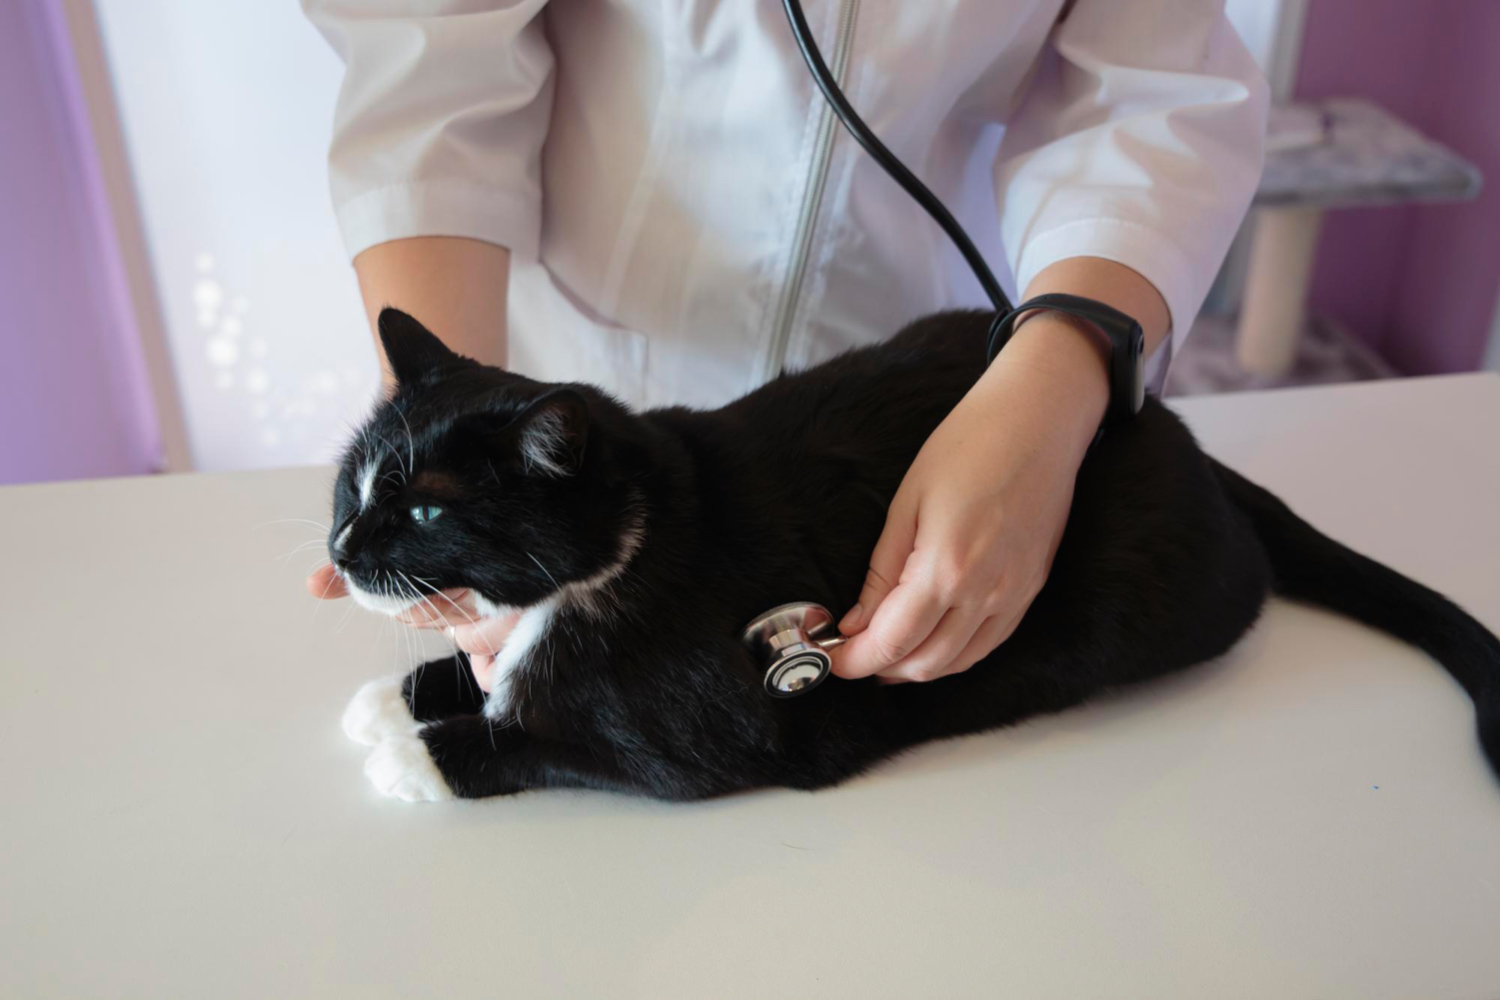 Evaluación de causas cardíacas en gatos disneicos, foto veterinario